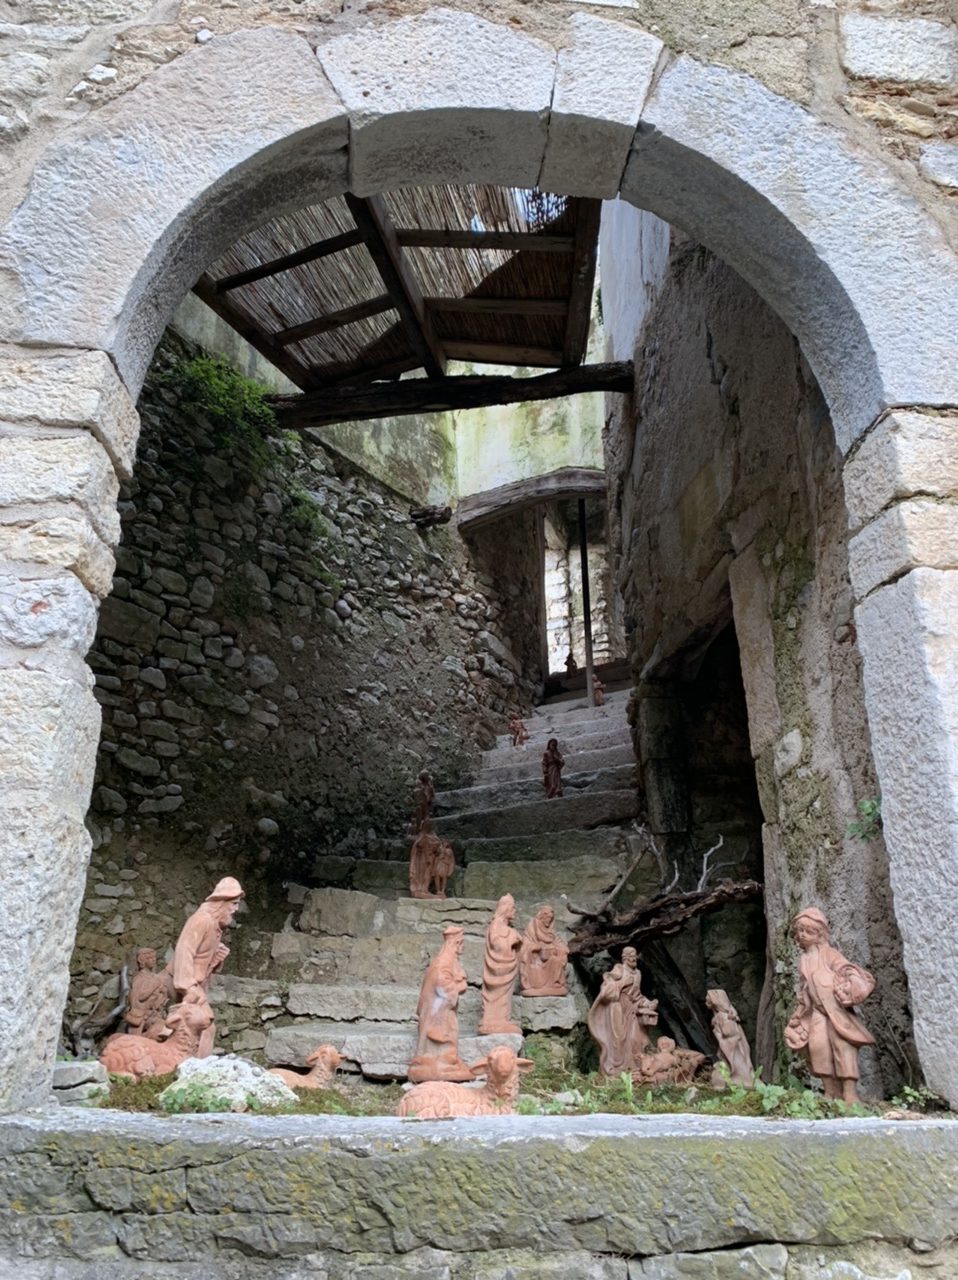 Campo di Brenzone, the village of dreams on Lake Garda. 